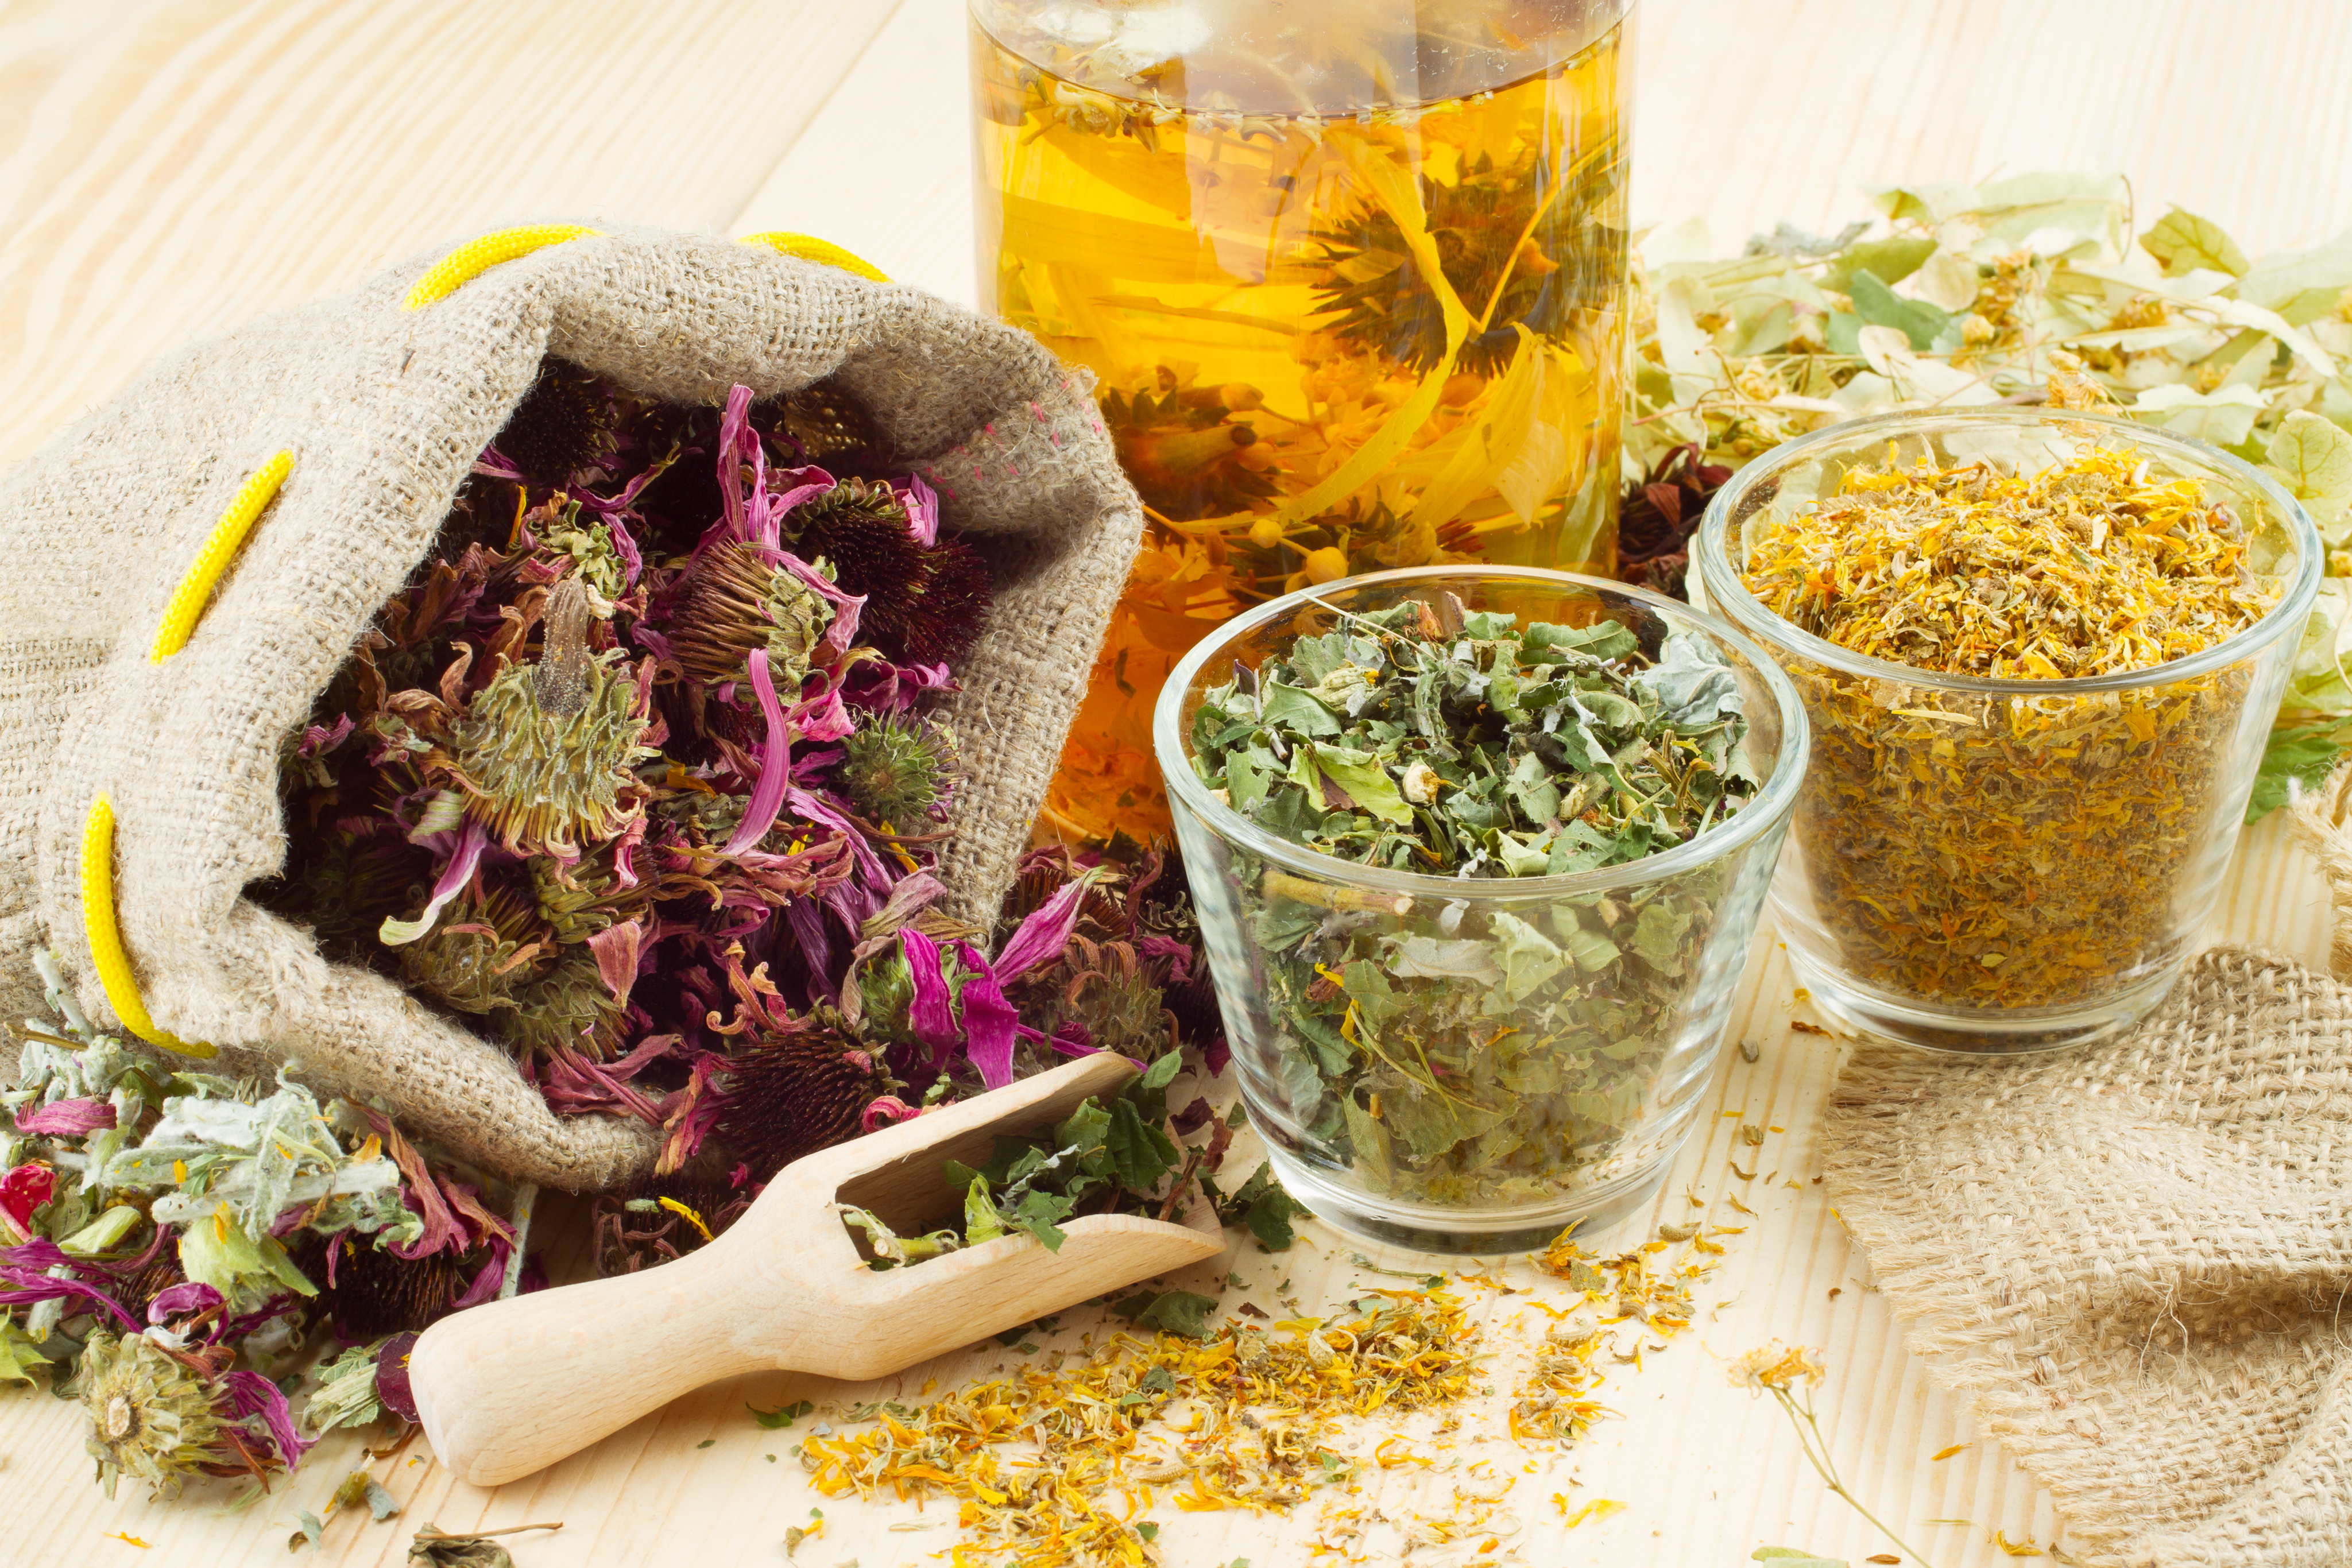 Рецепты знахарей. Анри Леклерк фитотерапия. Лекарственные травы. Травяной чай. Целебные травы.